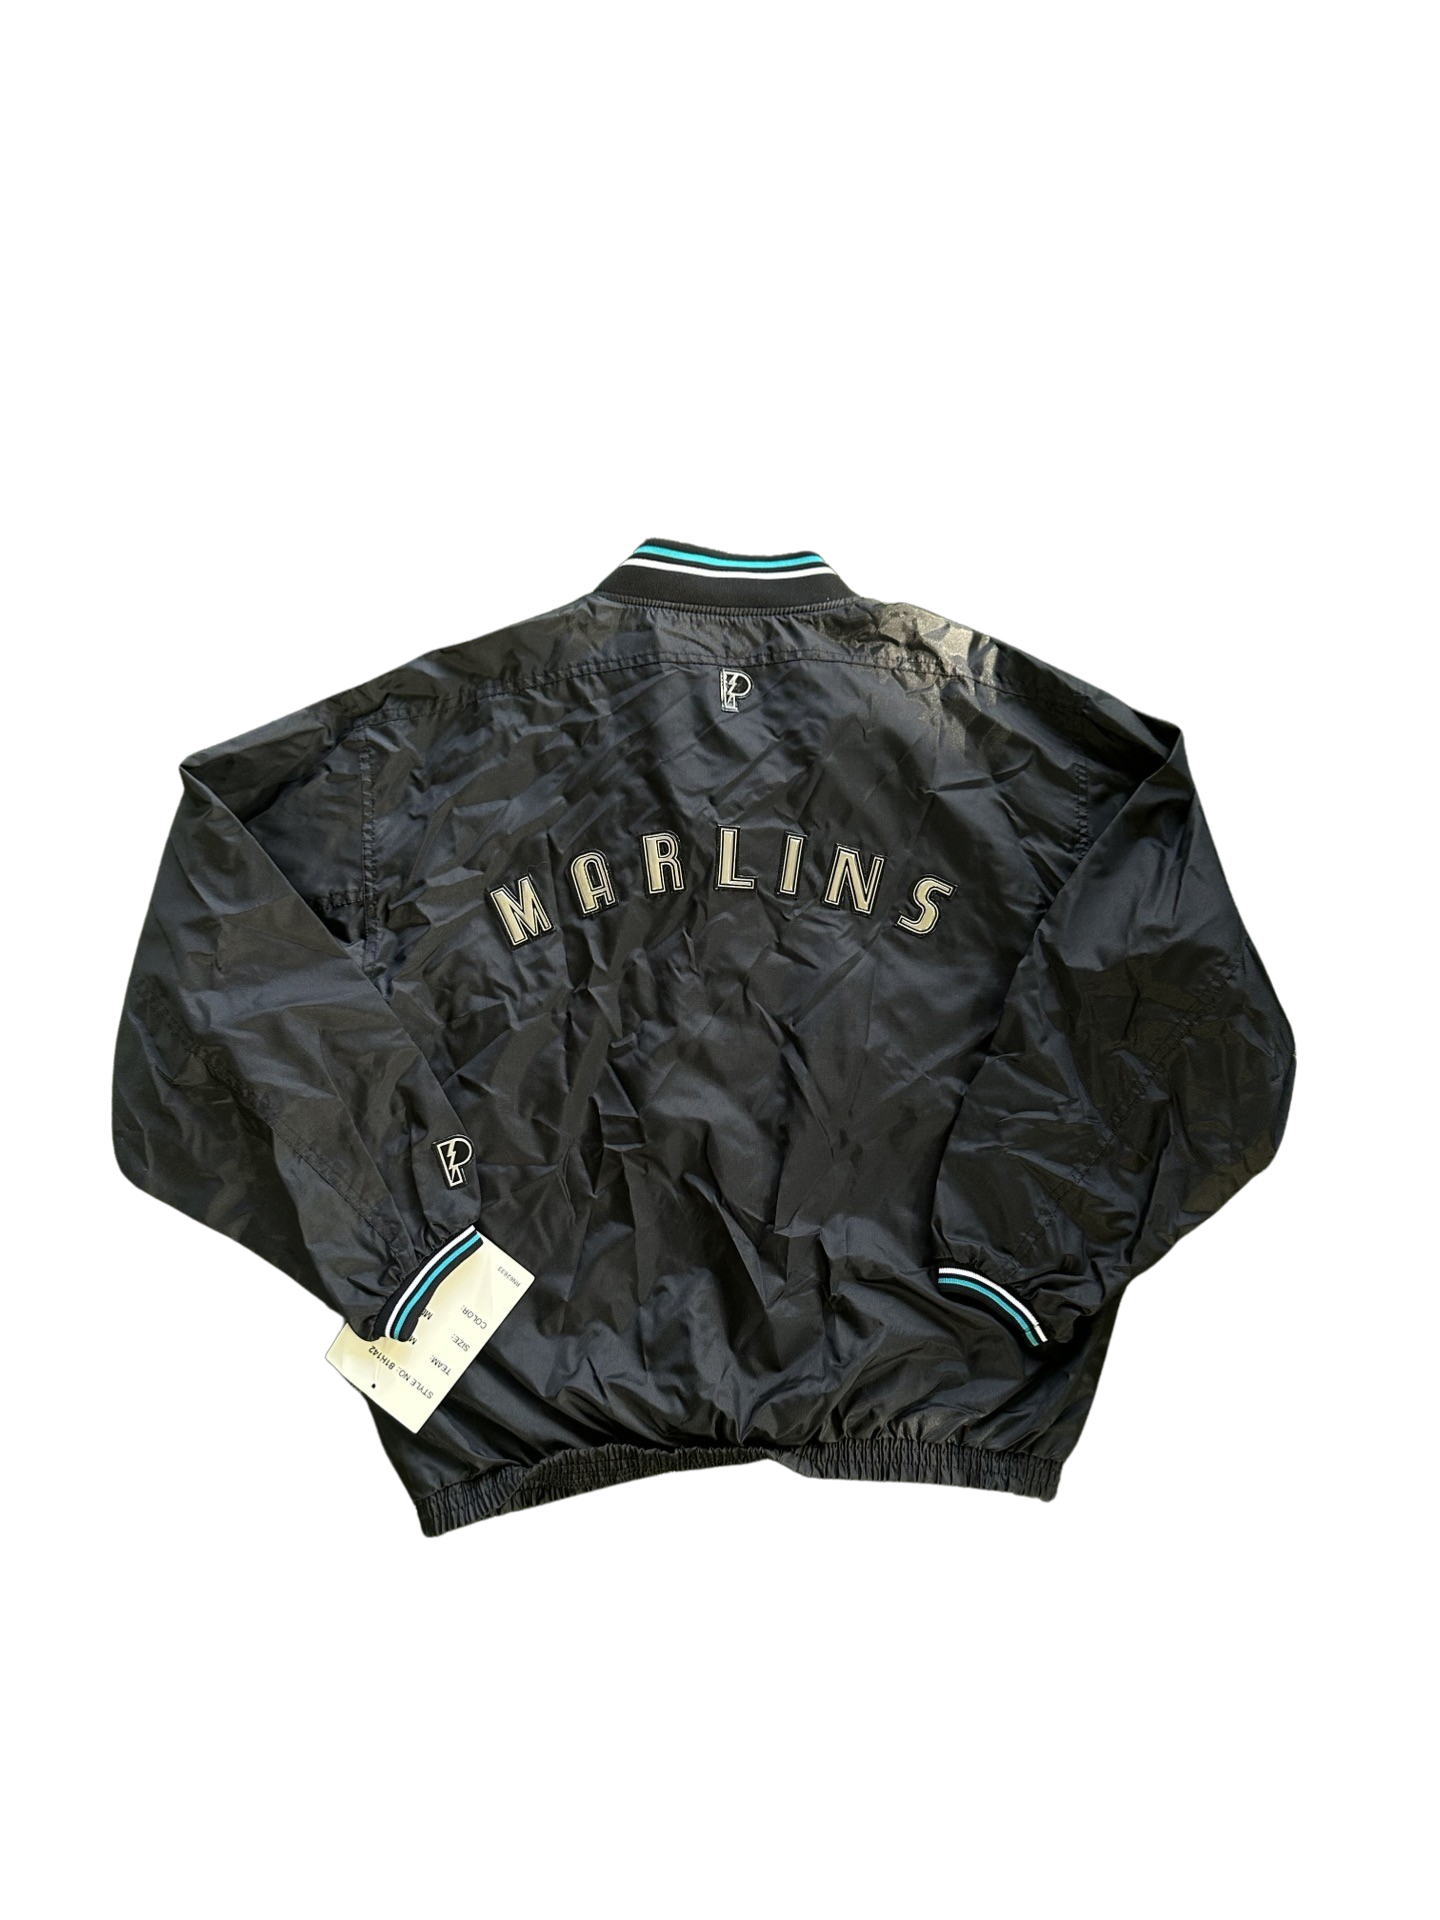 Vintage Miami Marlins pullover jacket